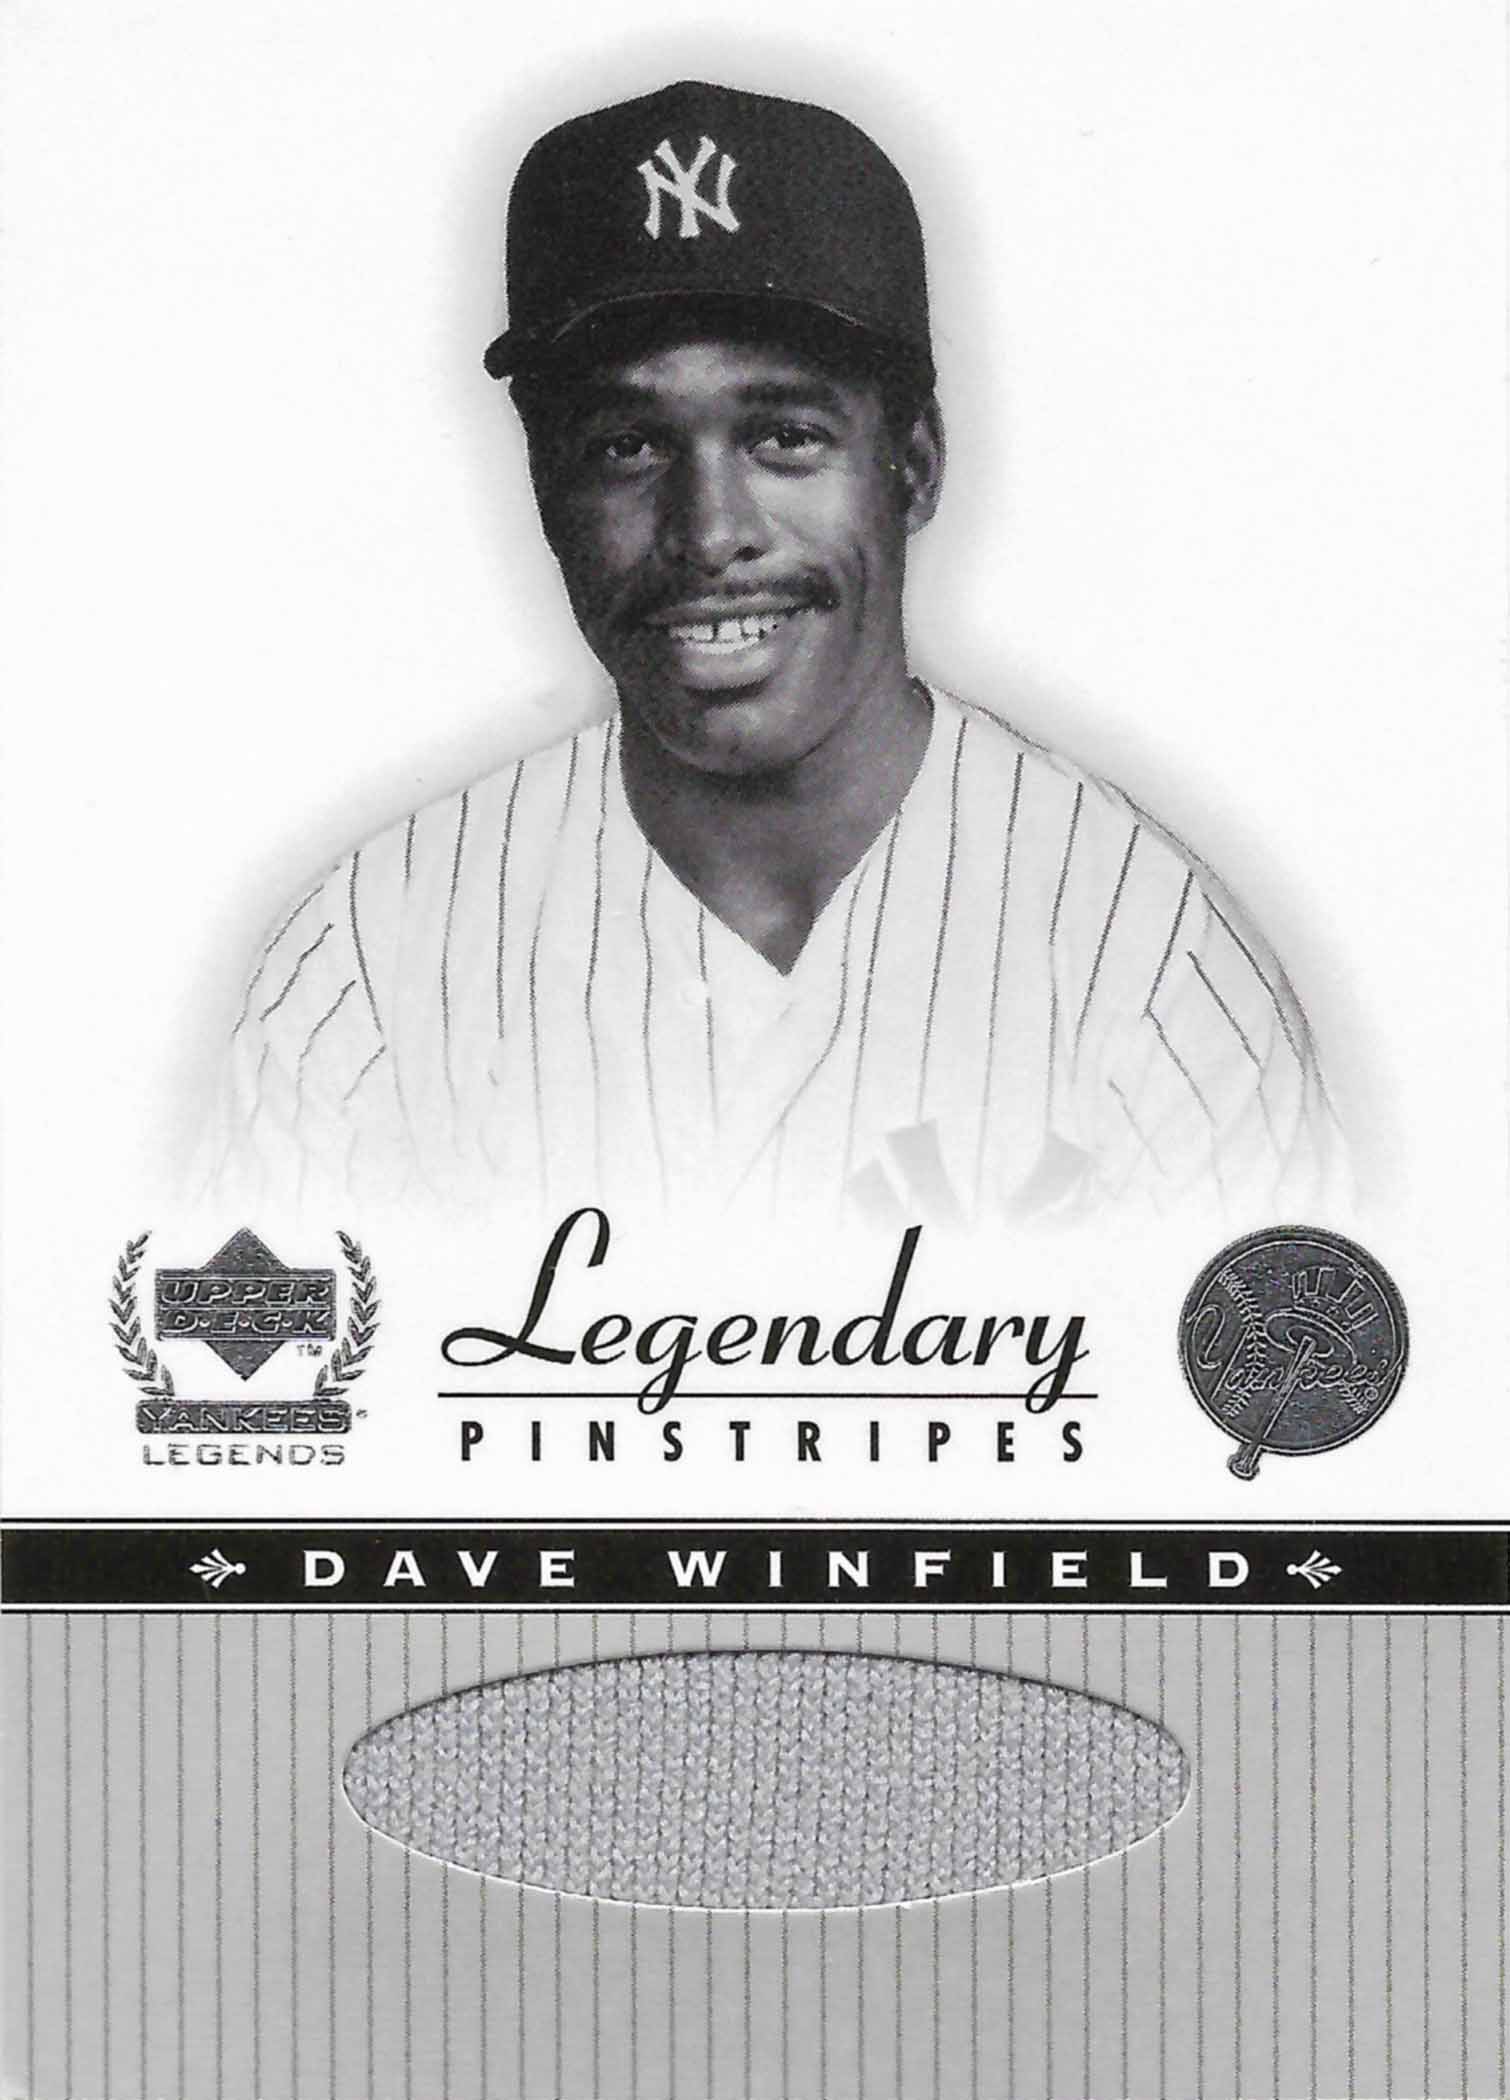 2000 Upper Deck Yankees Legends Legendary Pinstripes